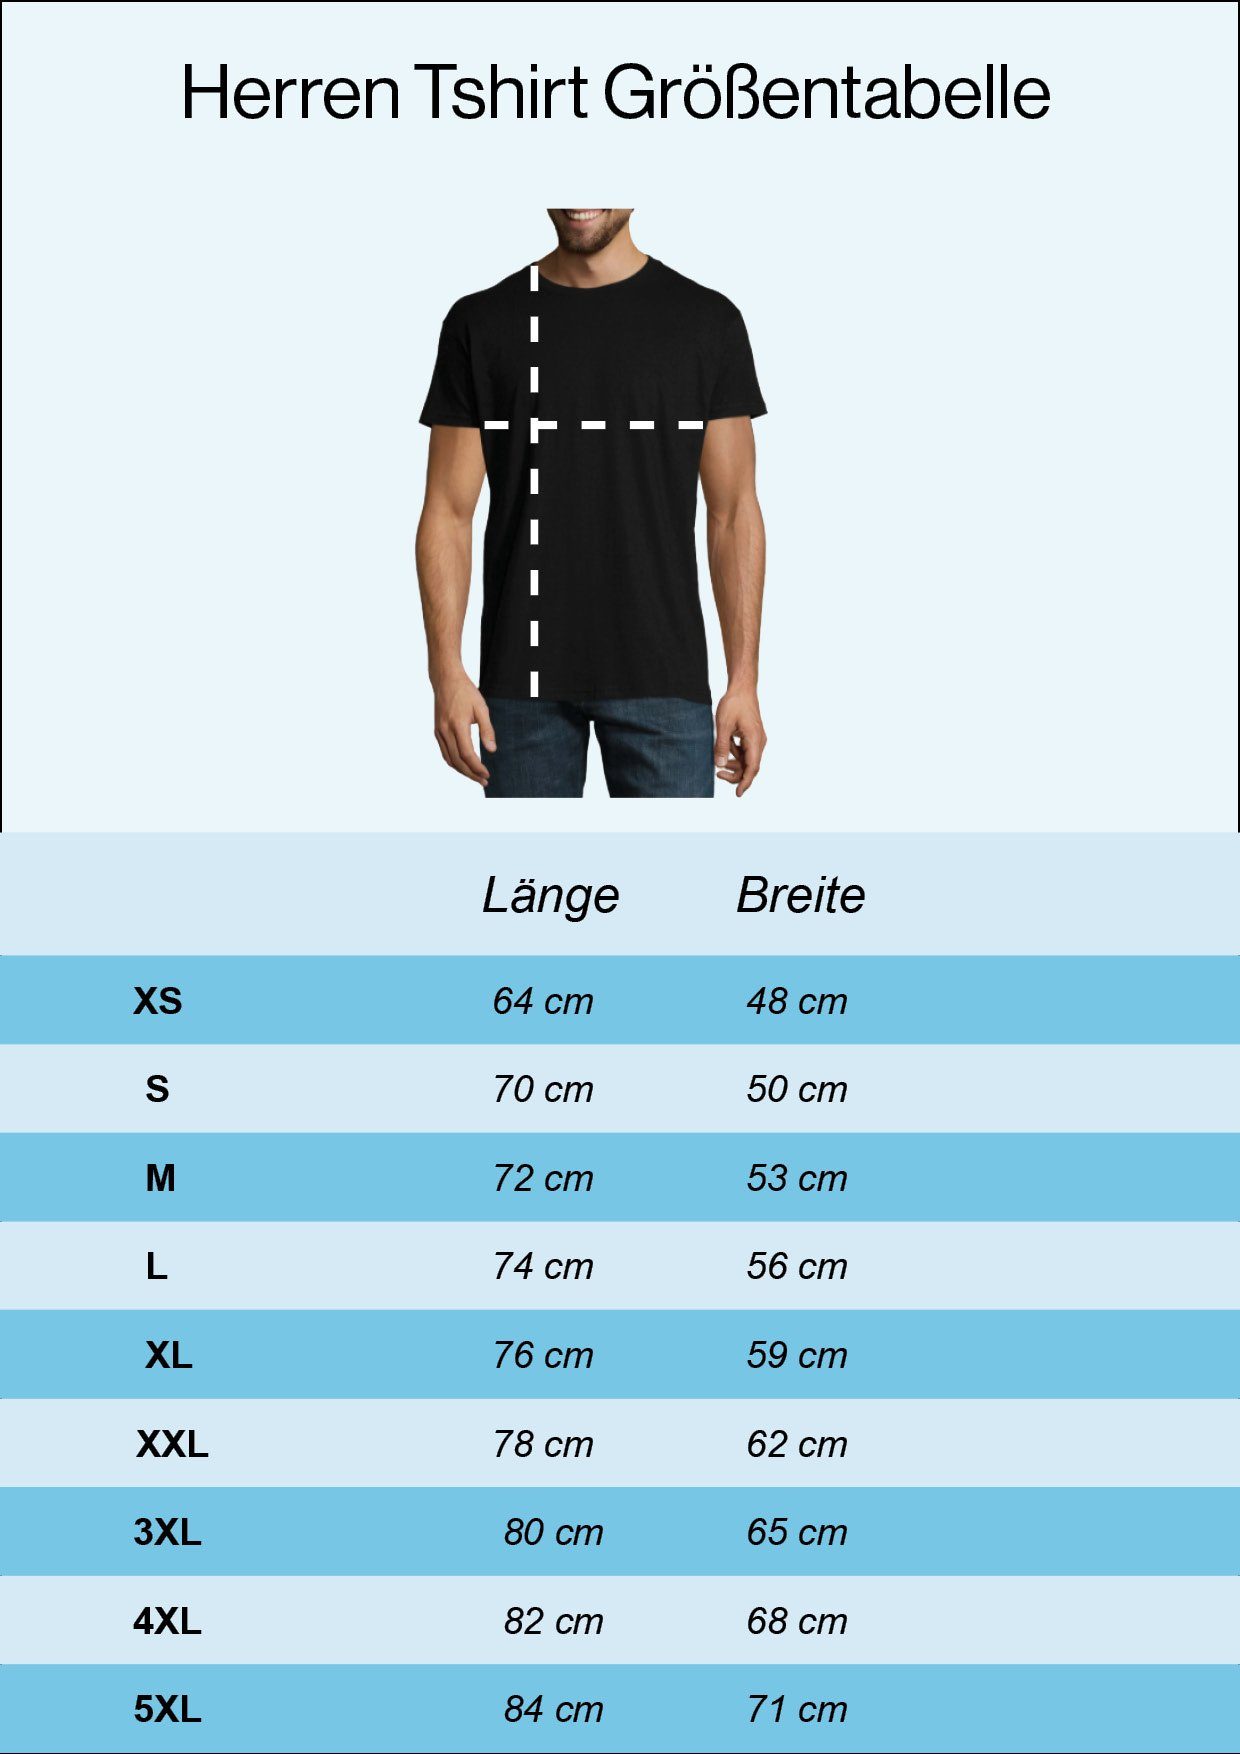 Youth Designz T-Shirt Corona Survivor Weiß Shirt modischem mit Frontprint Herren